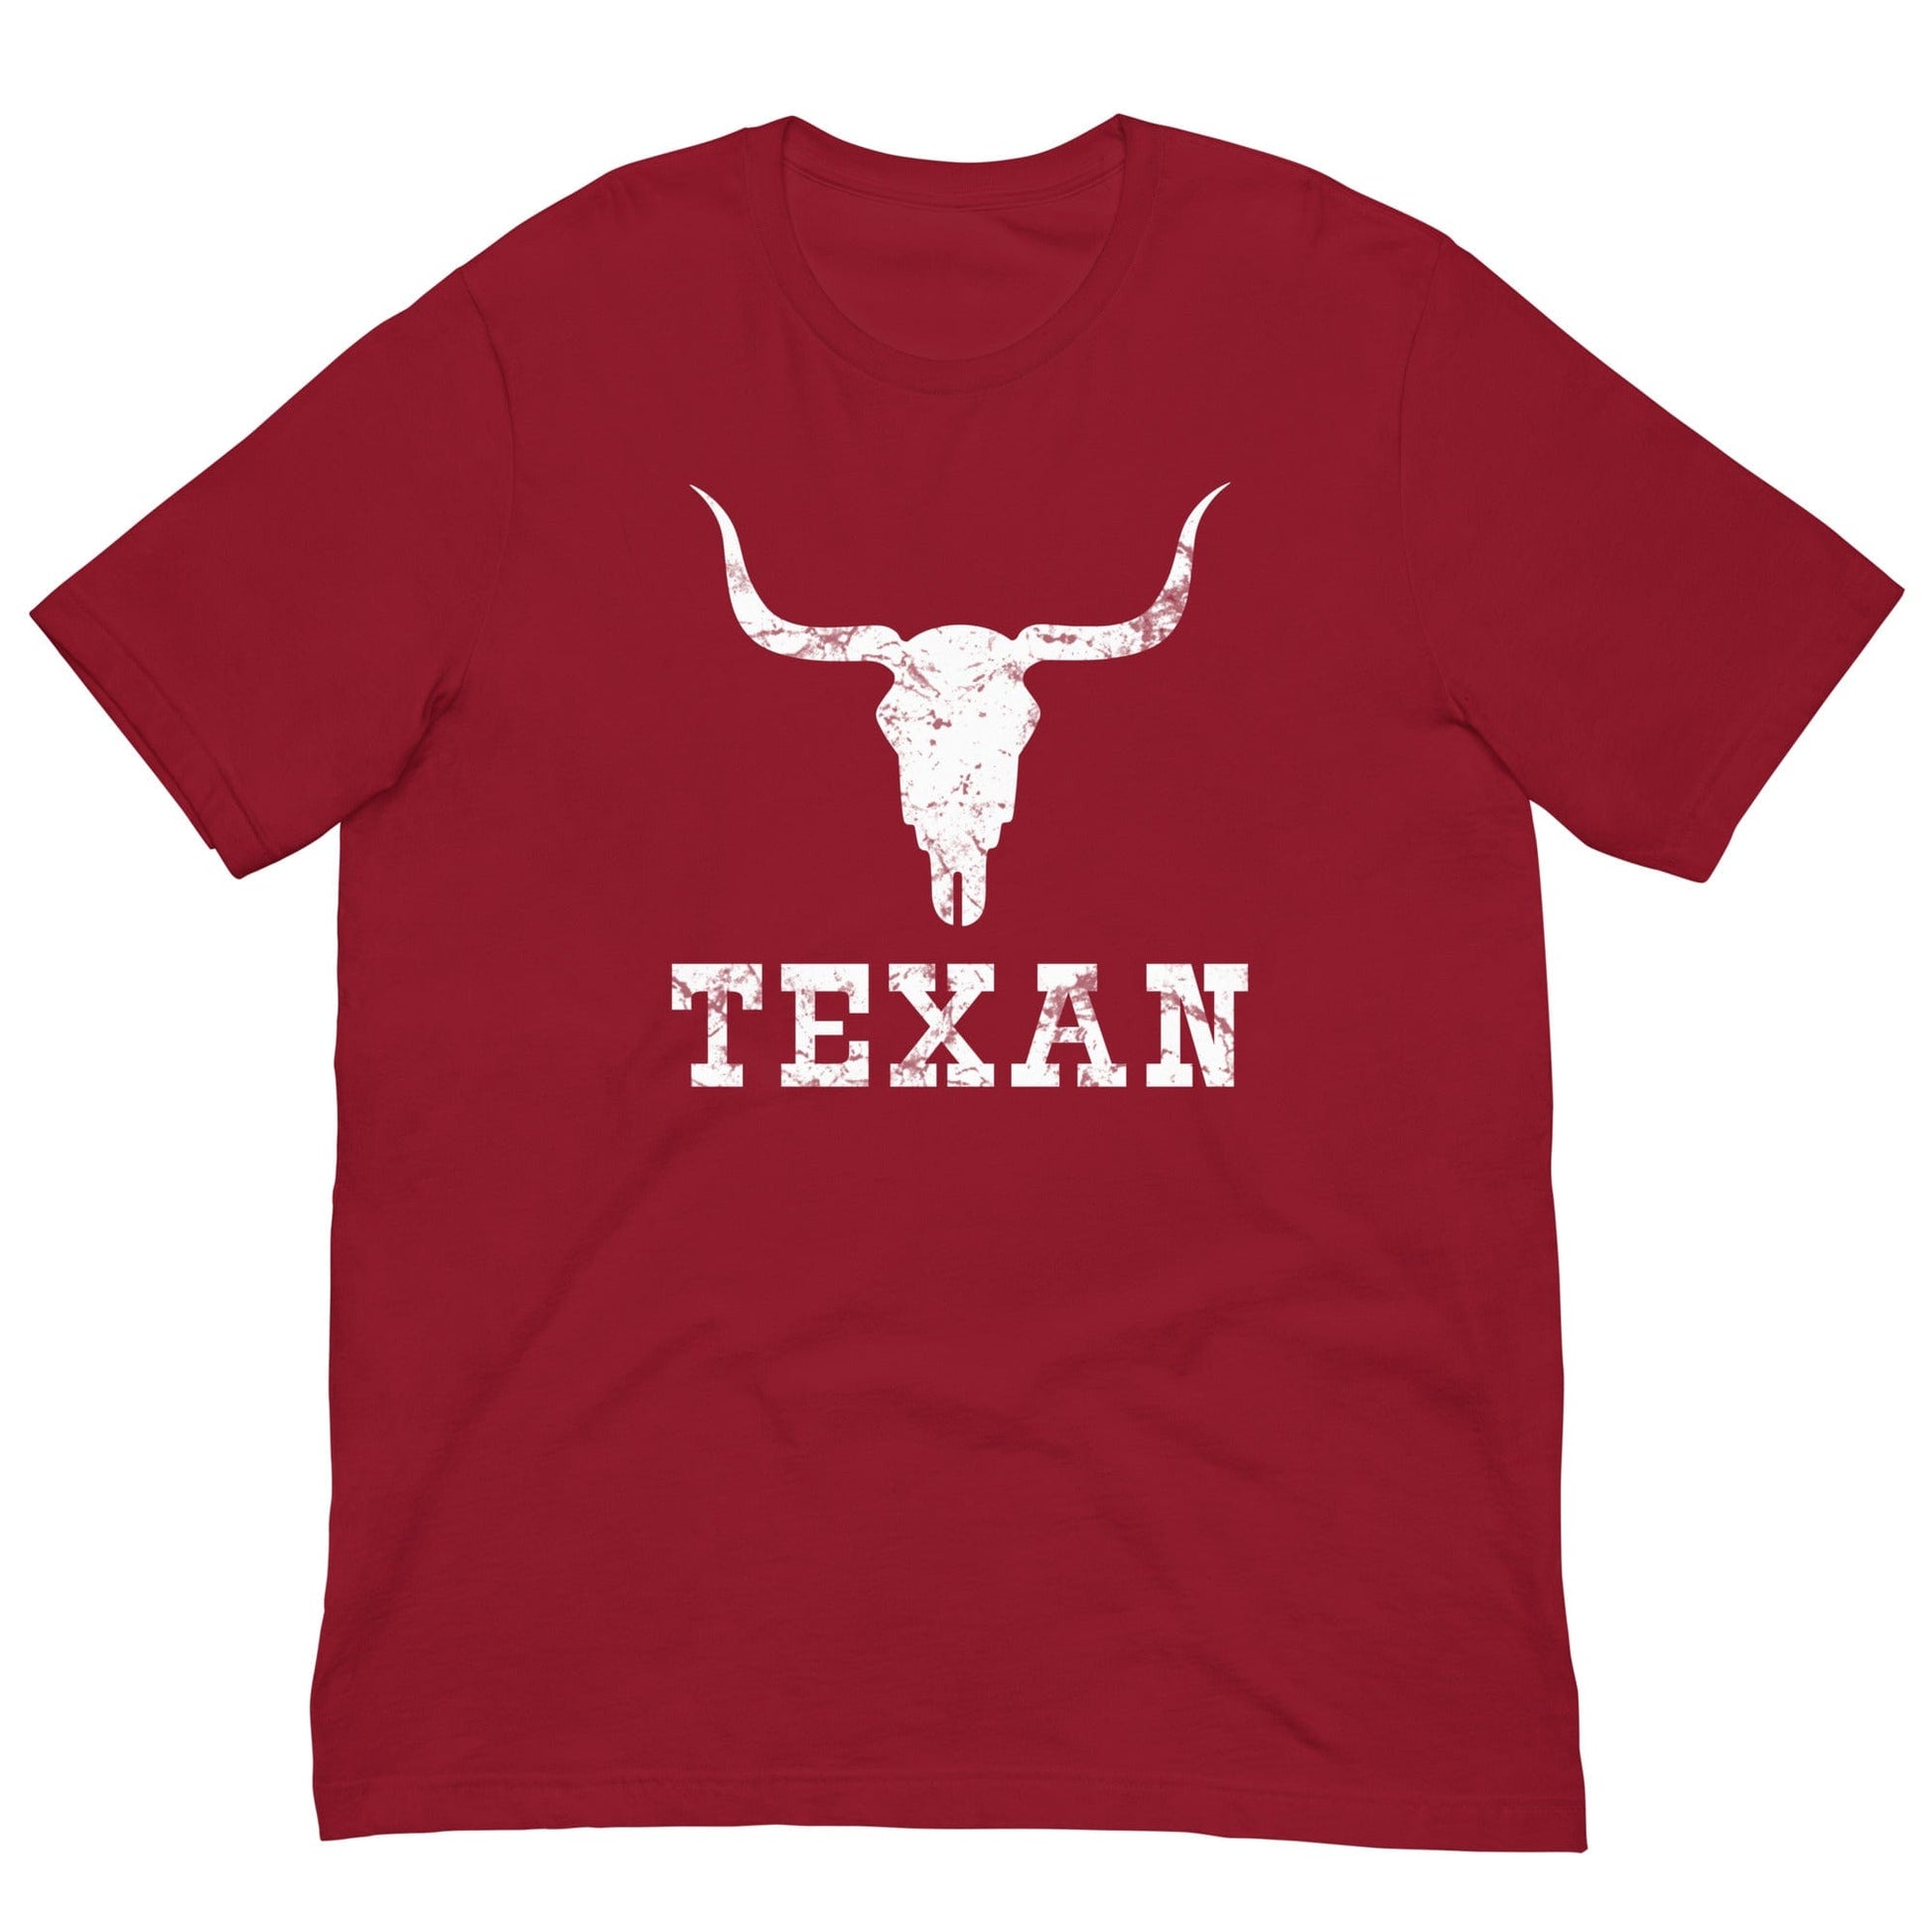 Texan Bull Skull T-shirt Cardinal / XS